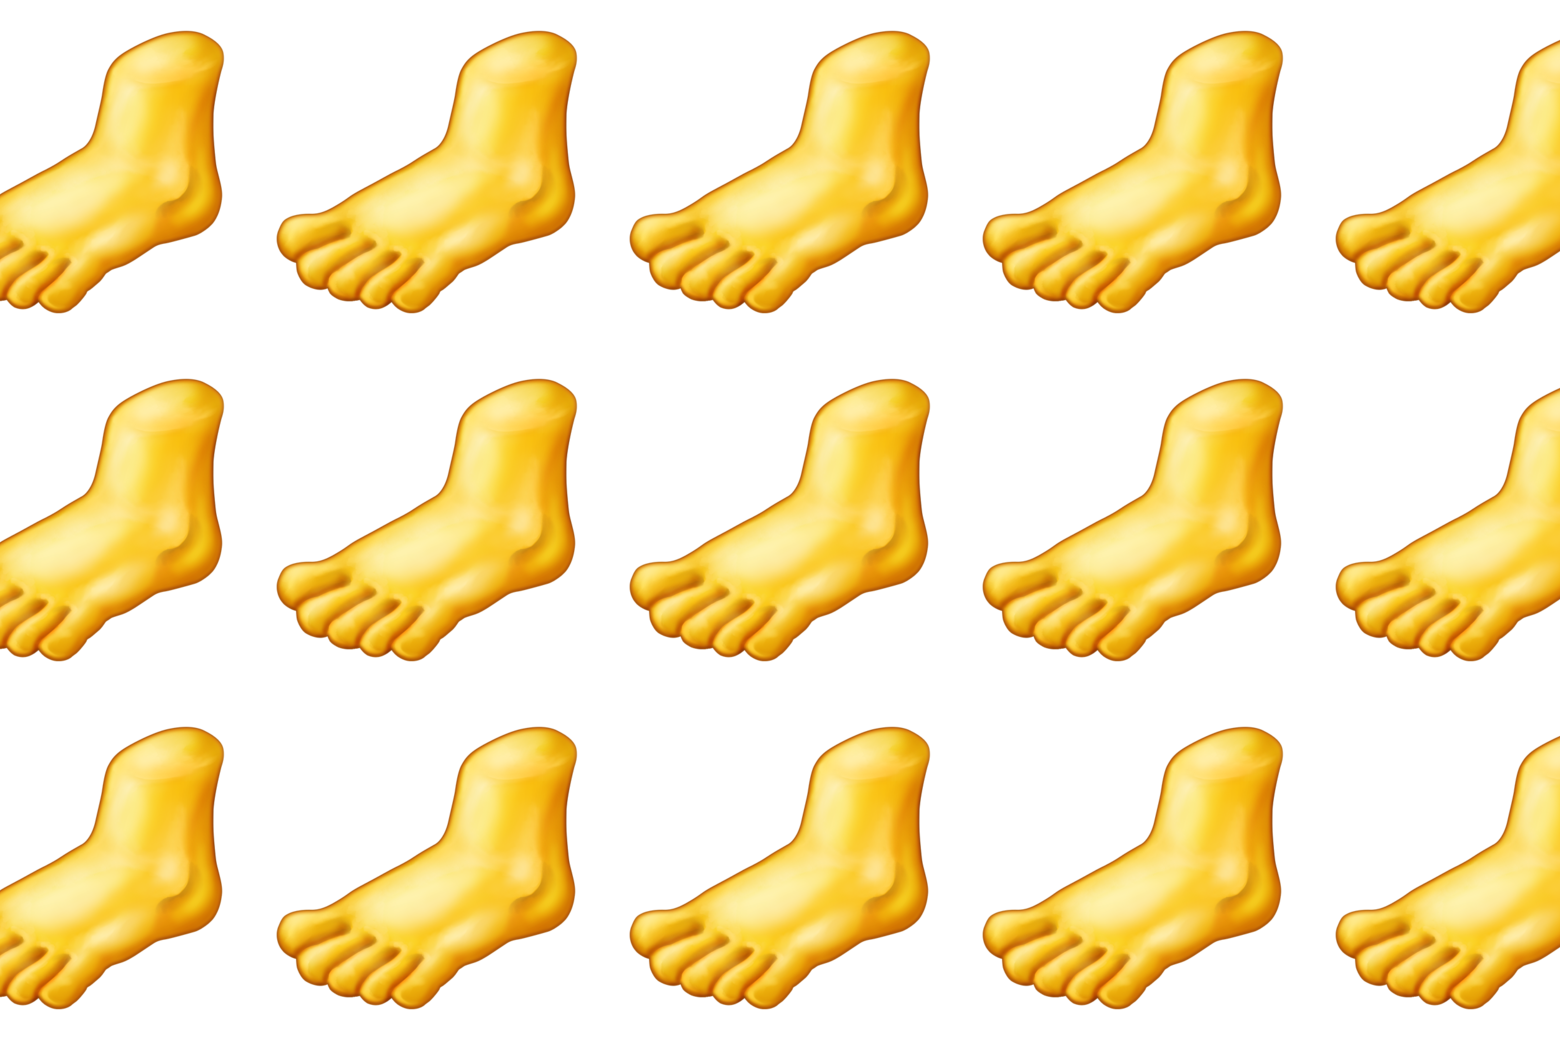 Severed foot emojis.